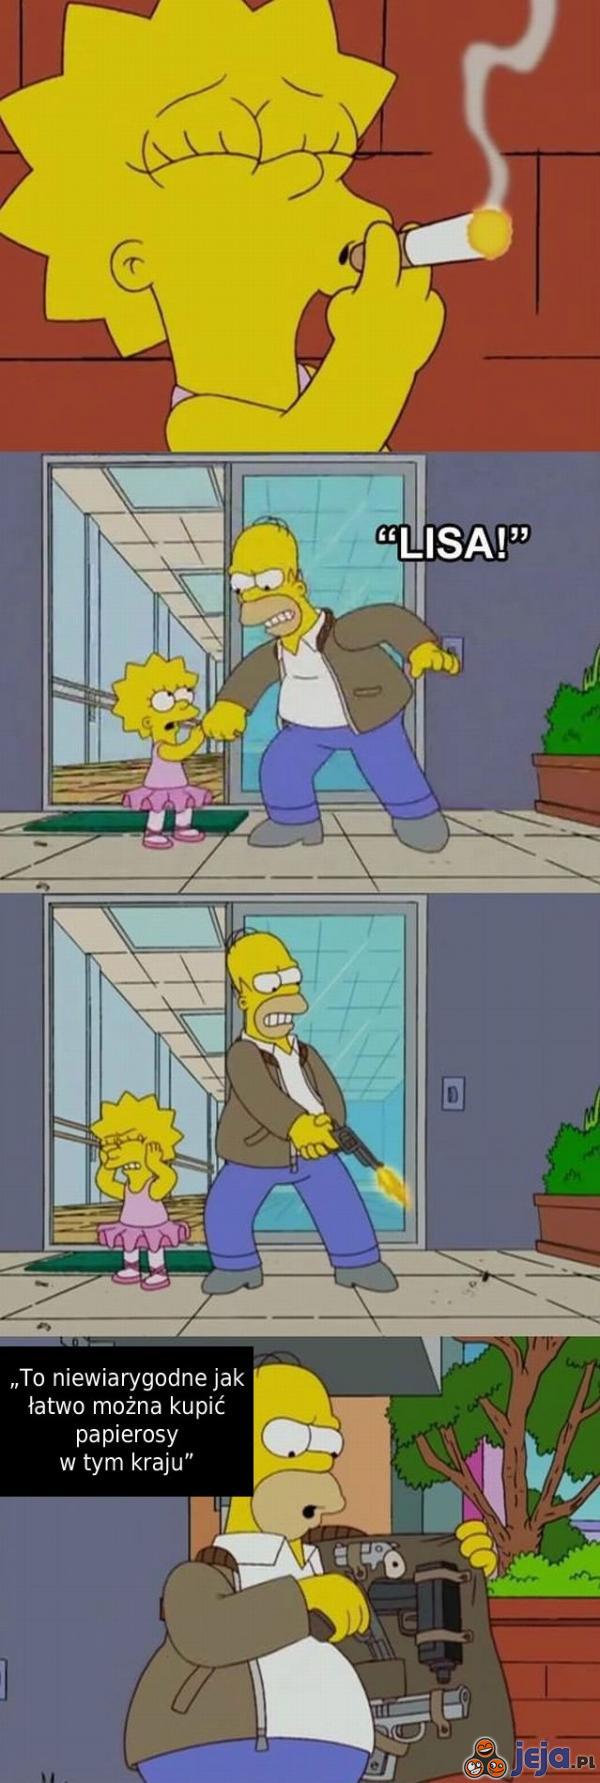 Homer narzeka na swój kraj